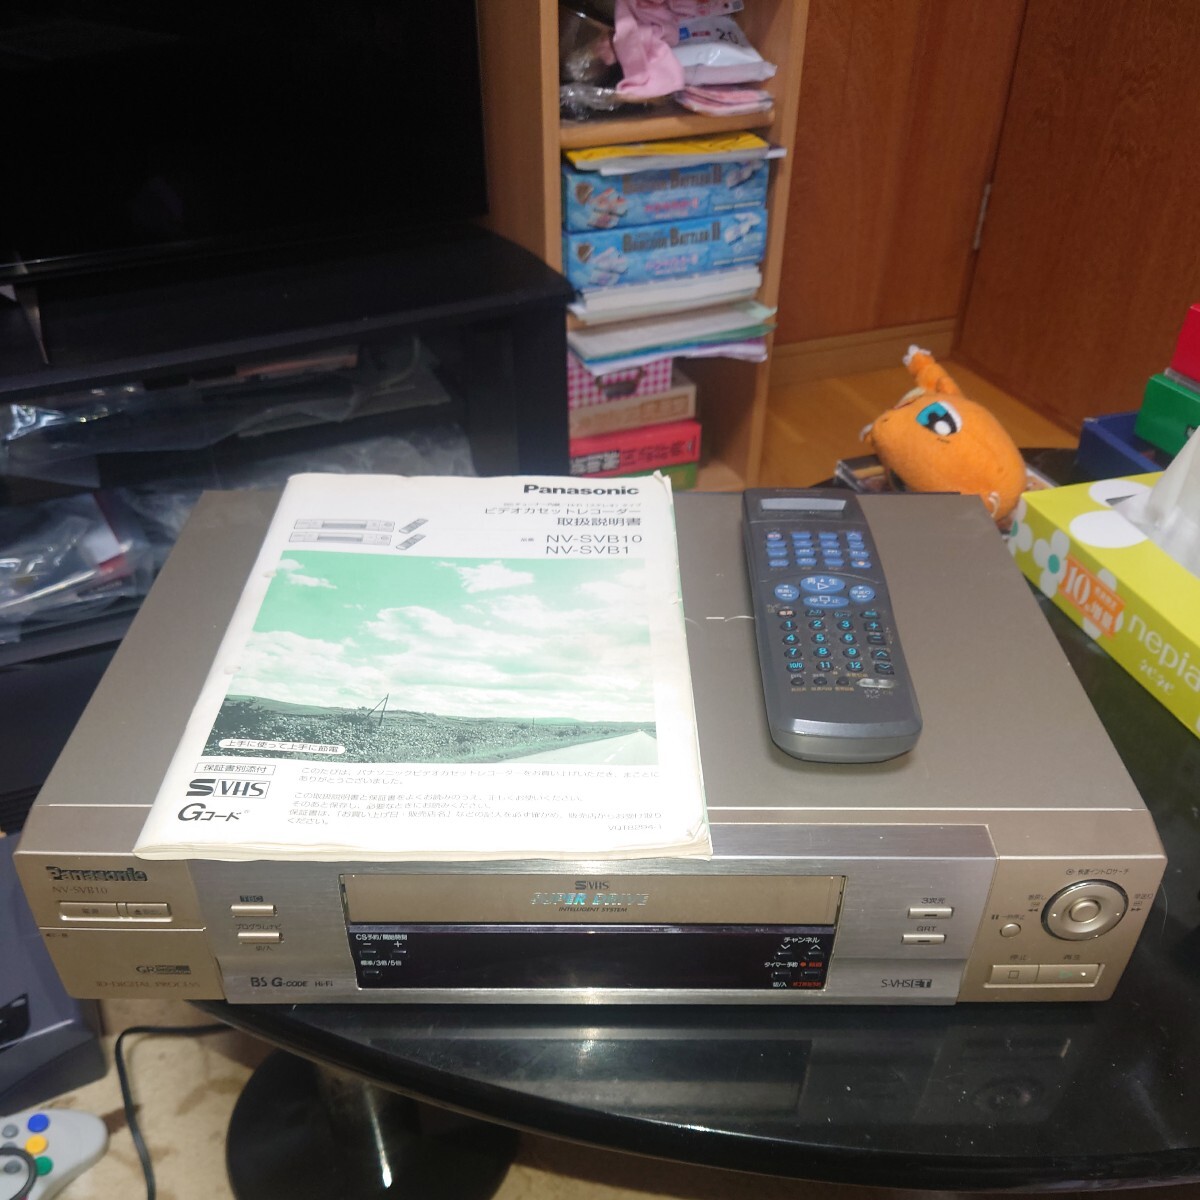 日本製 パナソニック 松下電器 Panasonic S-VHS(スーパーVHS) NV-SVB10 ビデオデッキ 動作確認済の画像1